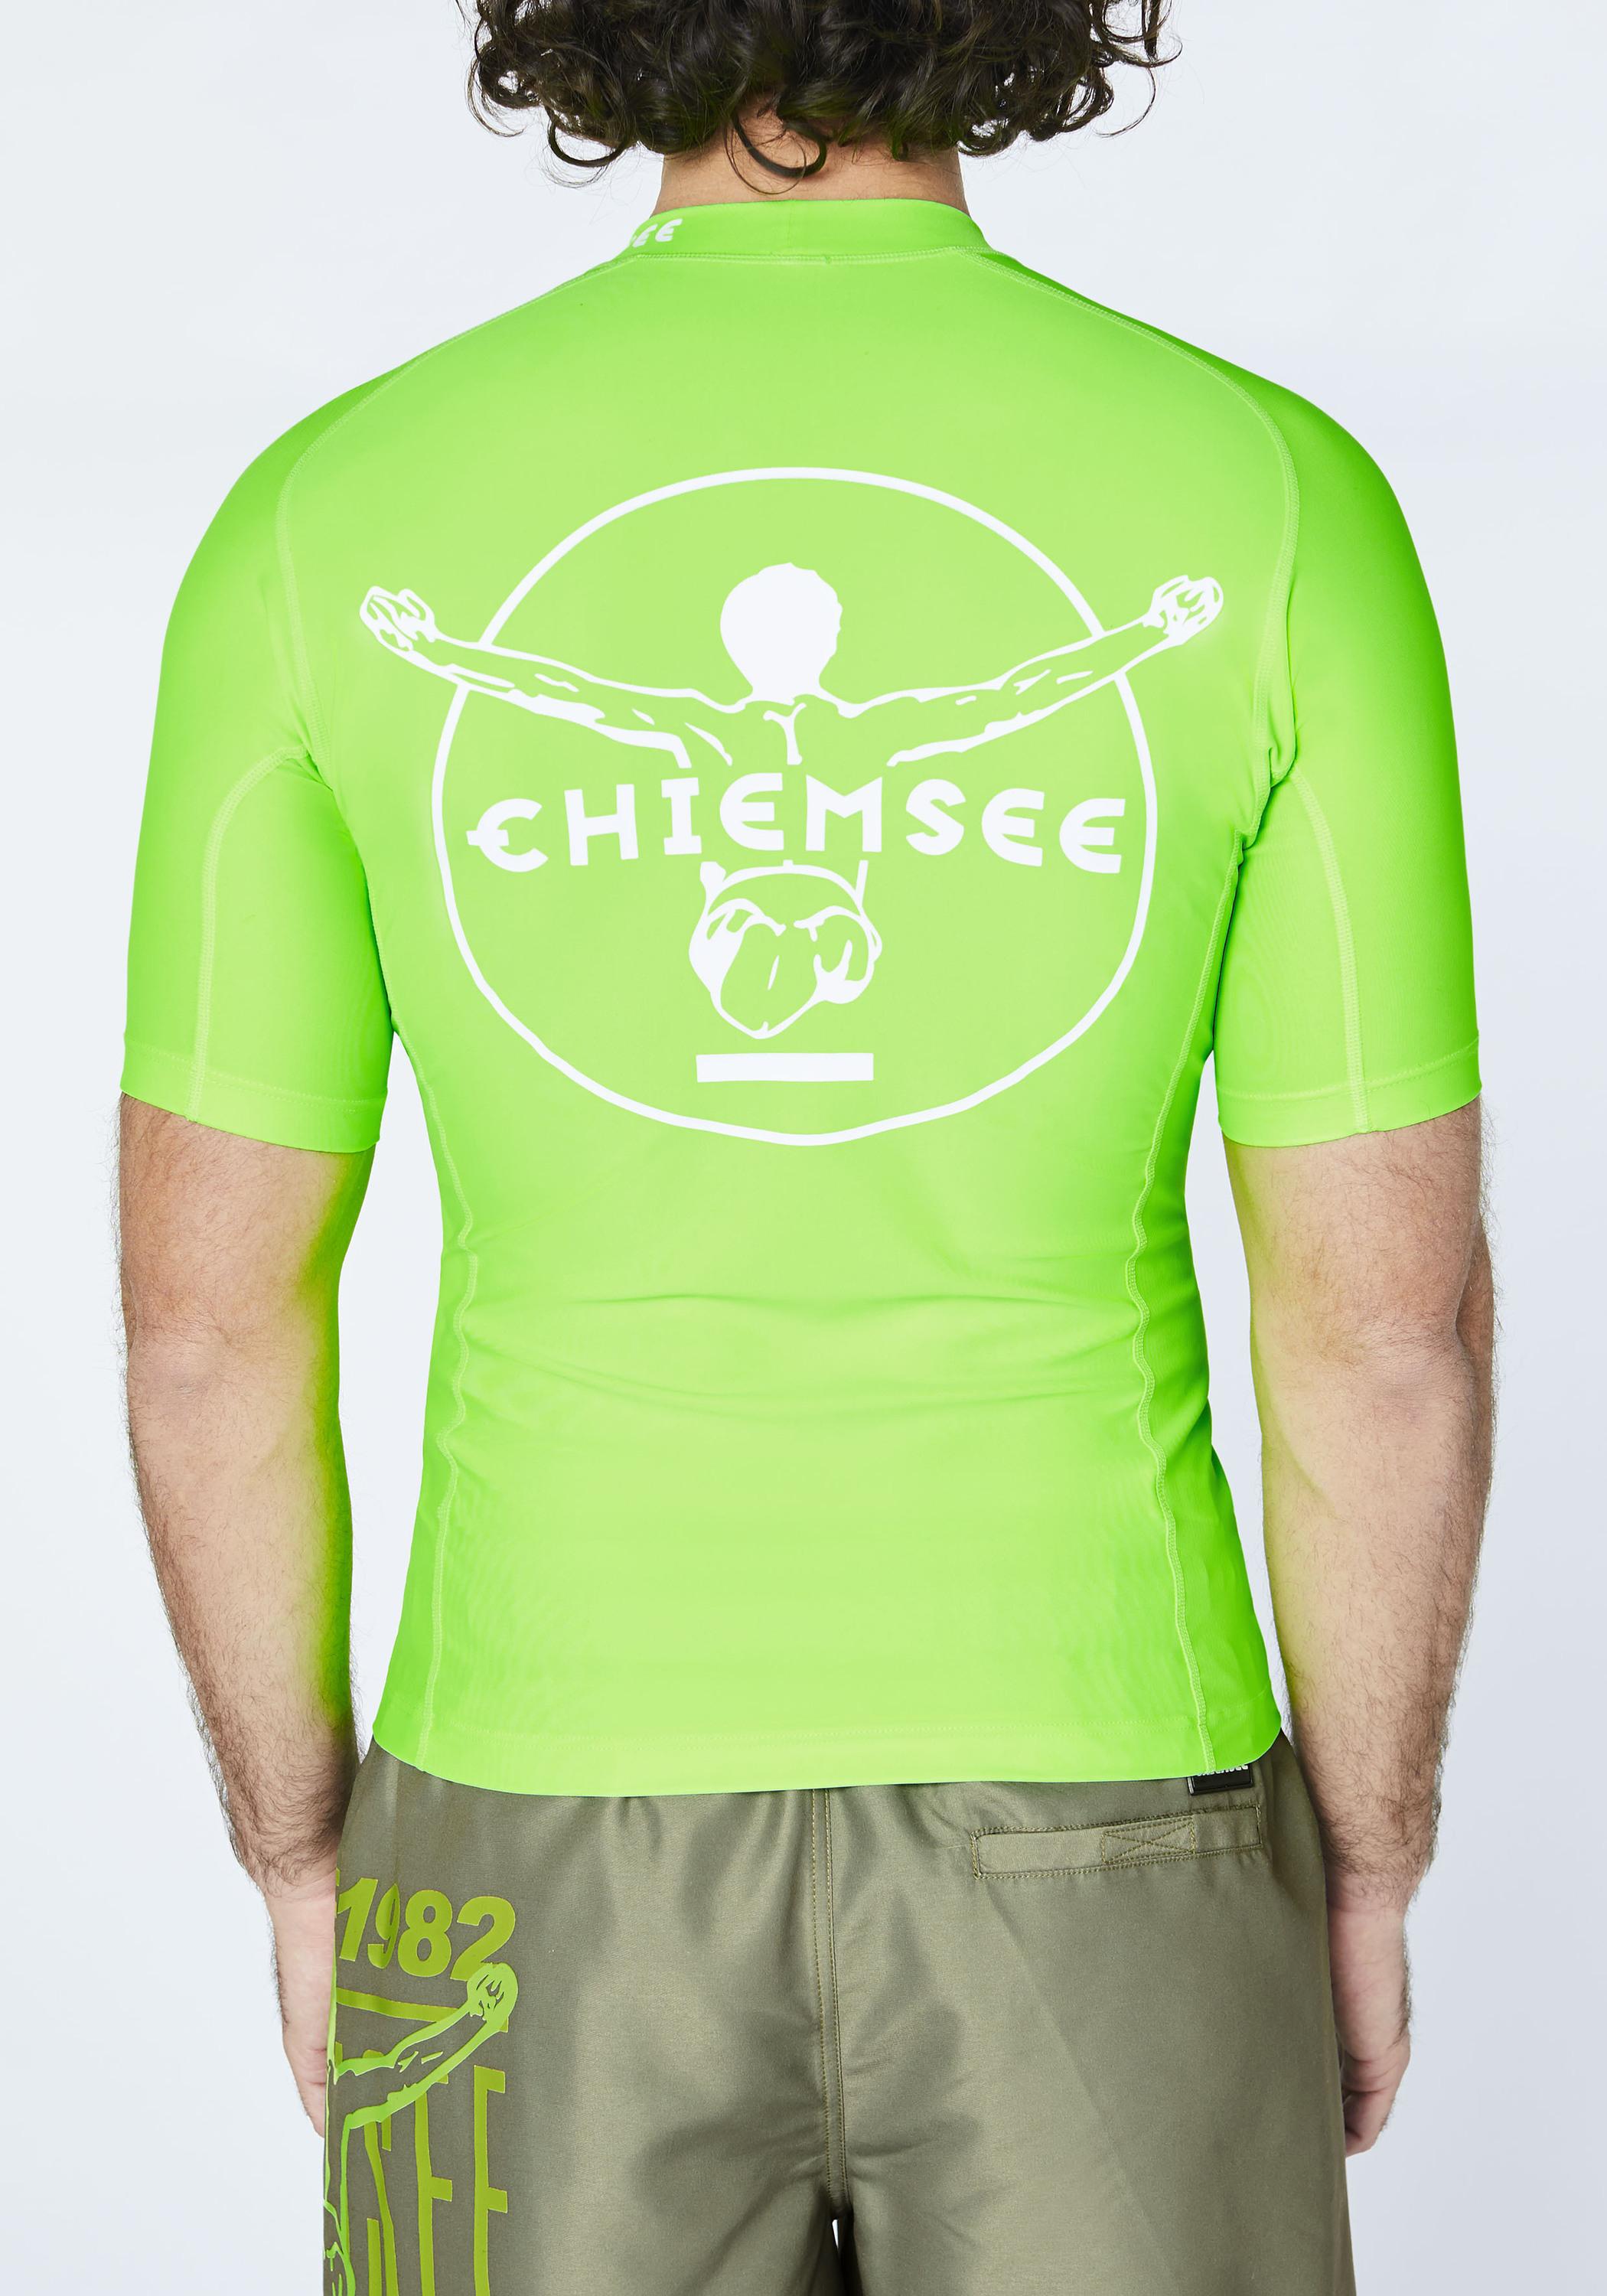 Online im Surf SportScheck Shop Chiemsee kaufen Gecko von Green Shirt Badeshirt